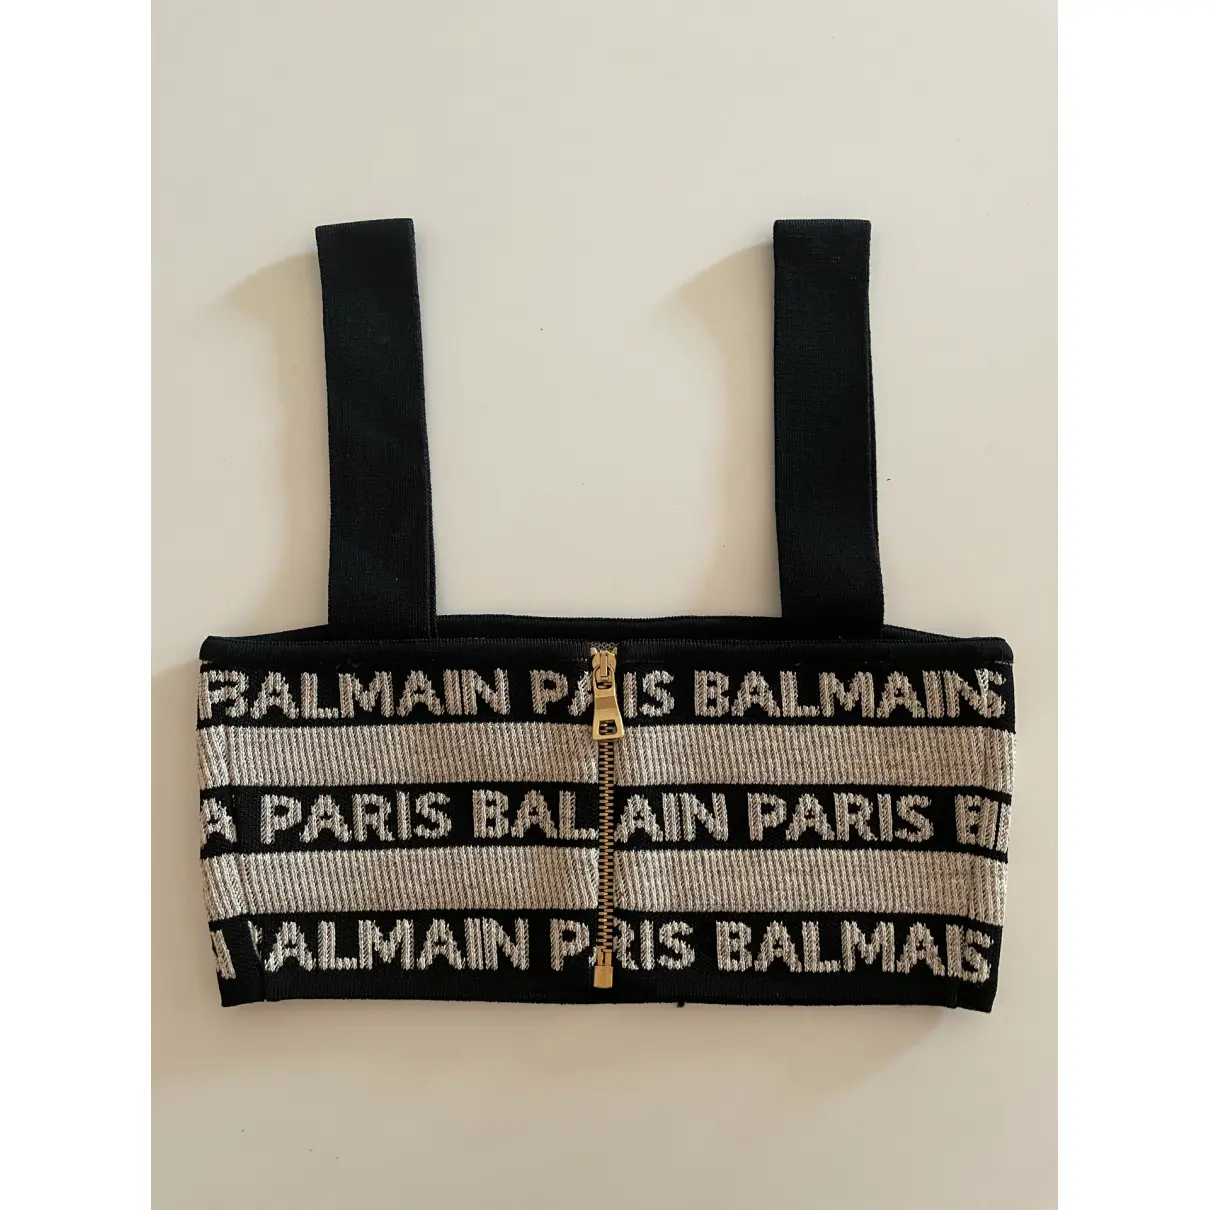 Buy Balmain Camisole online